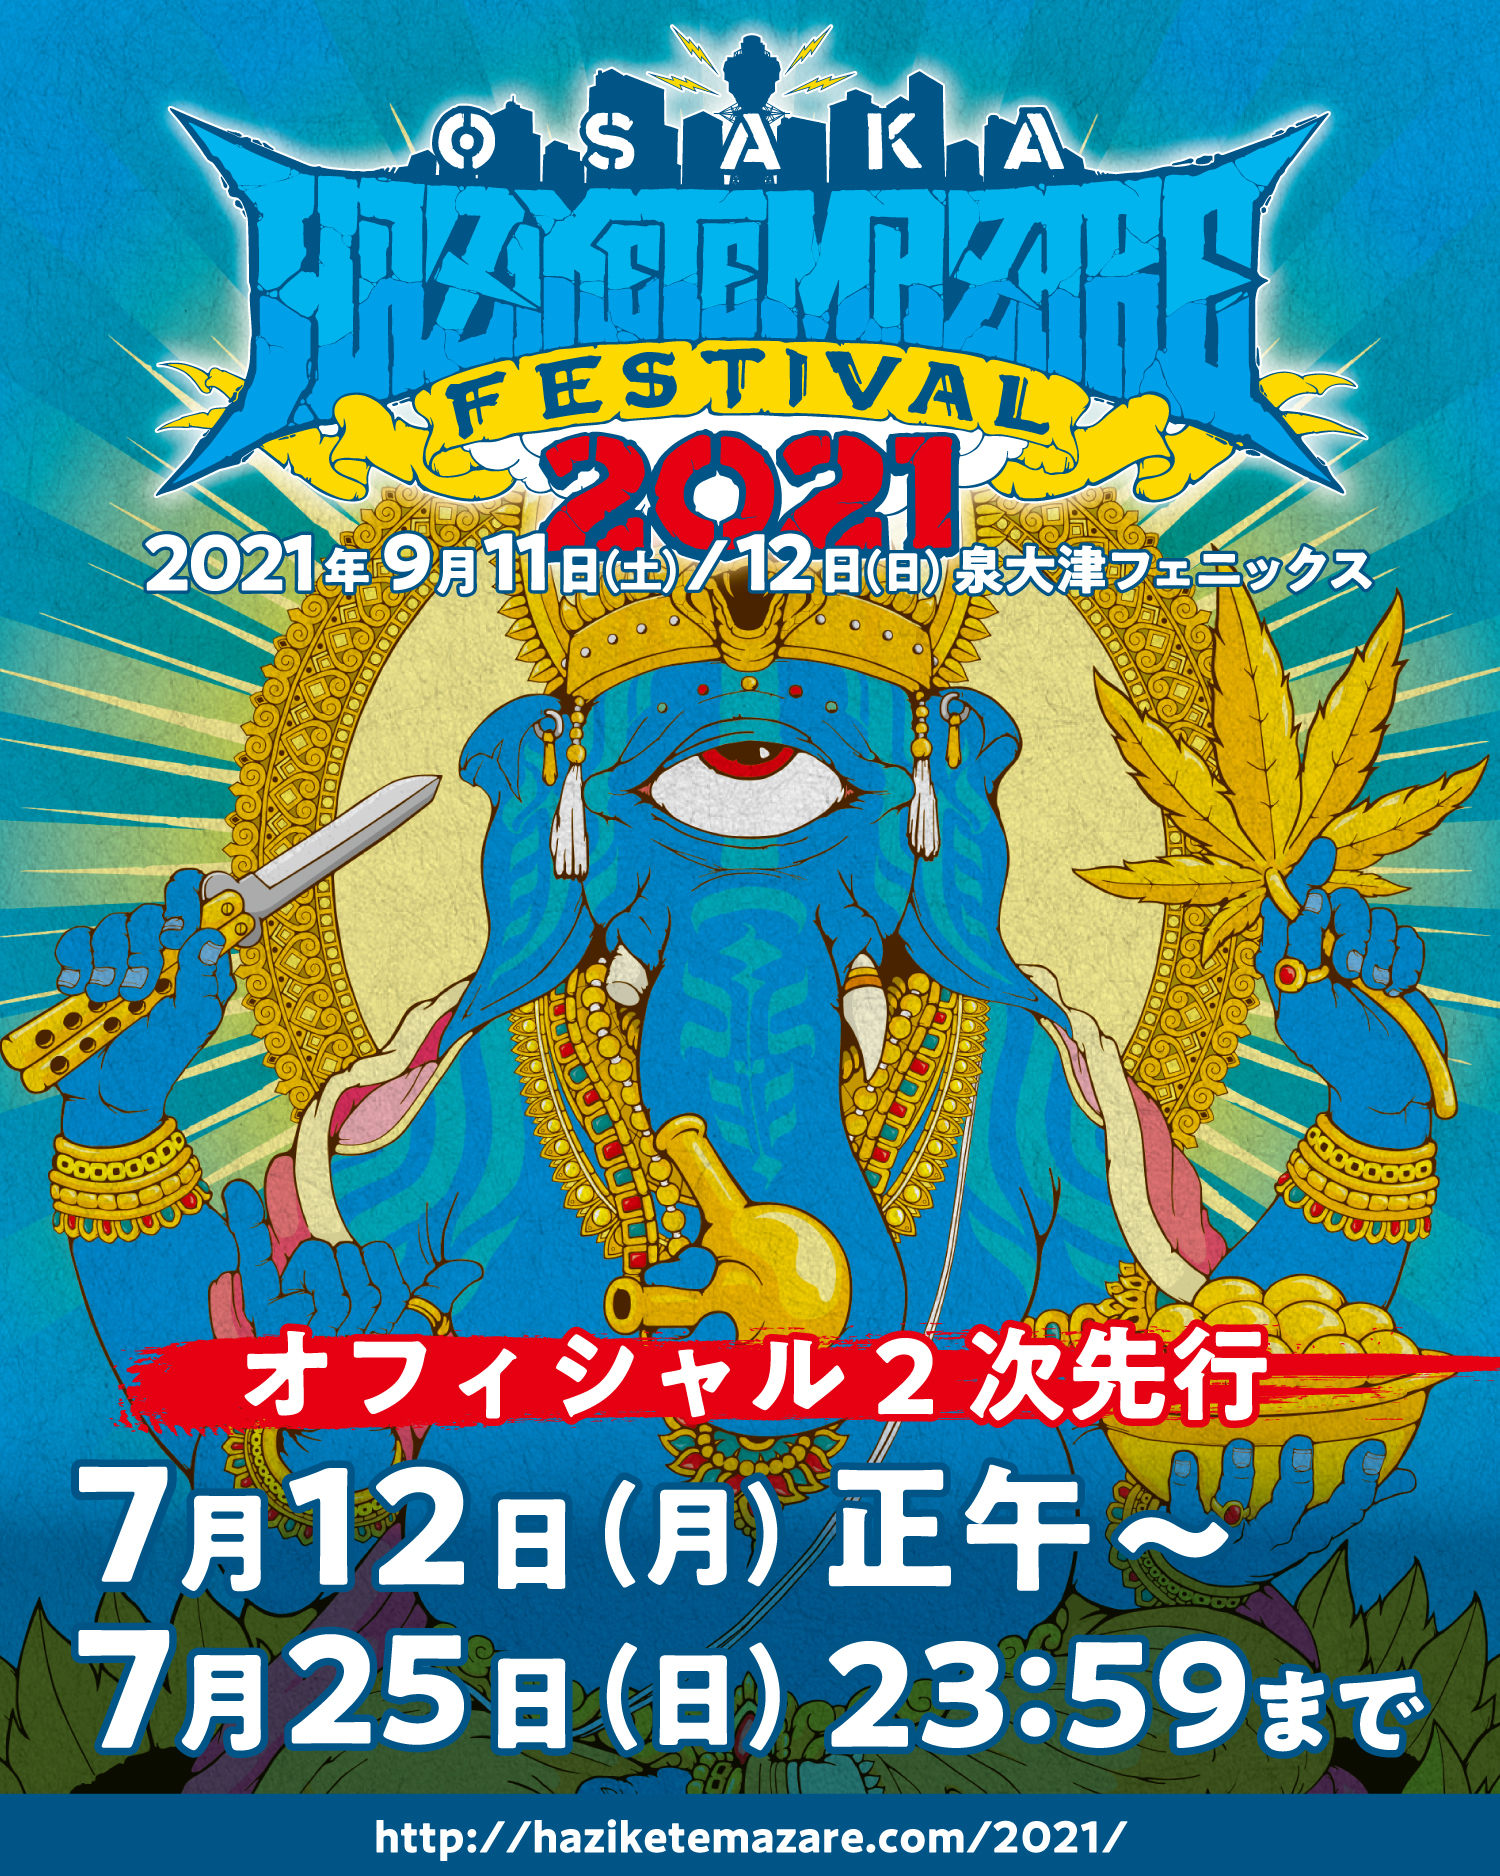 『HEY-SMITH Presents OSAKA HAZIKETEMAZARE FESTIVAL 2021』